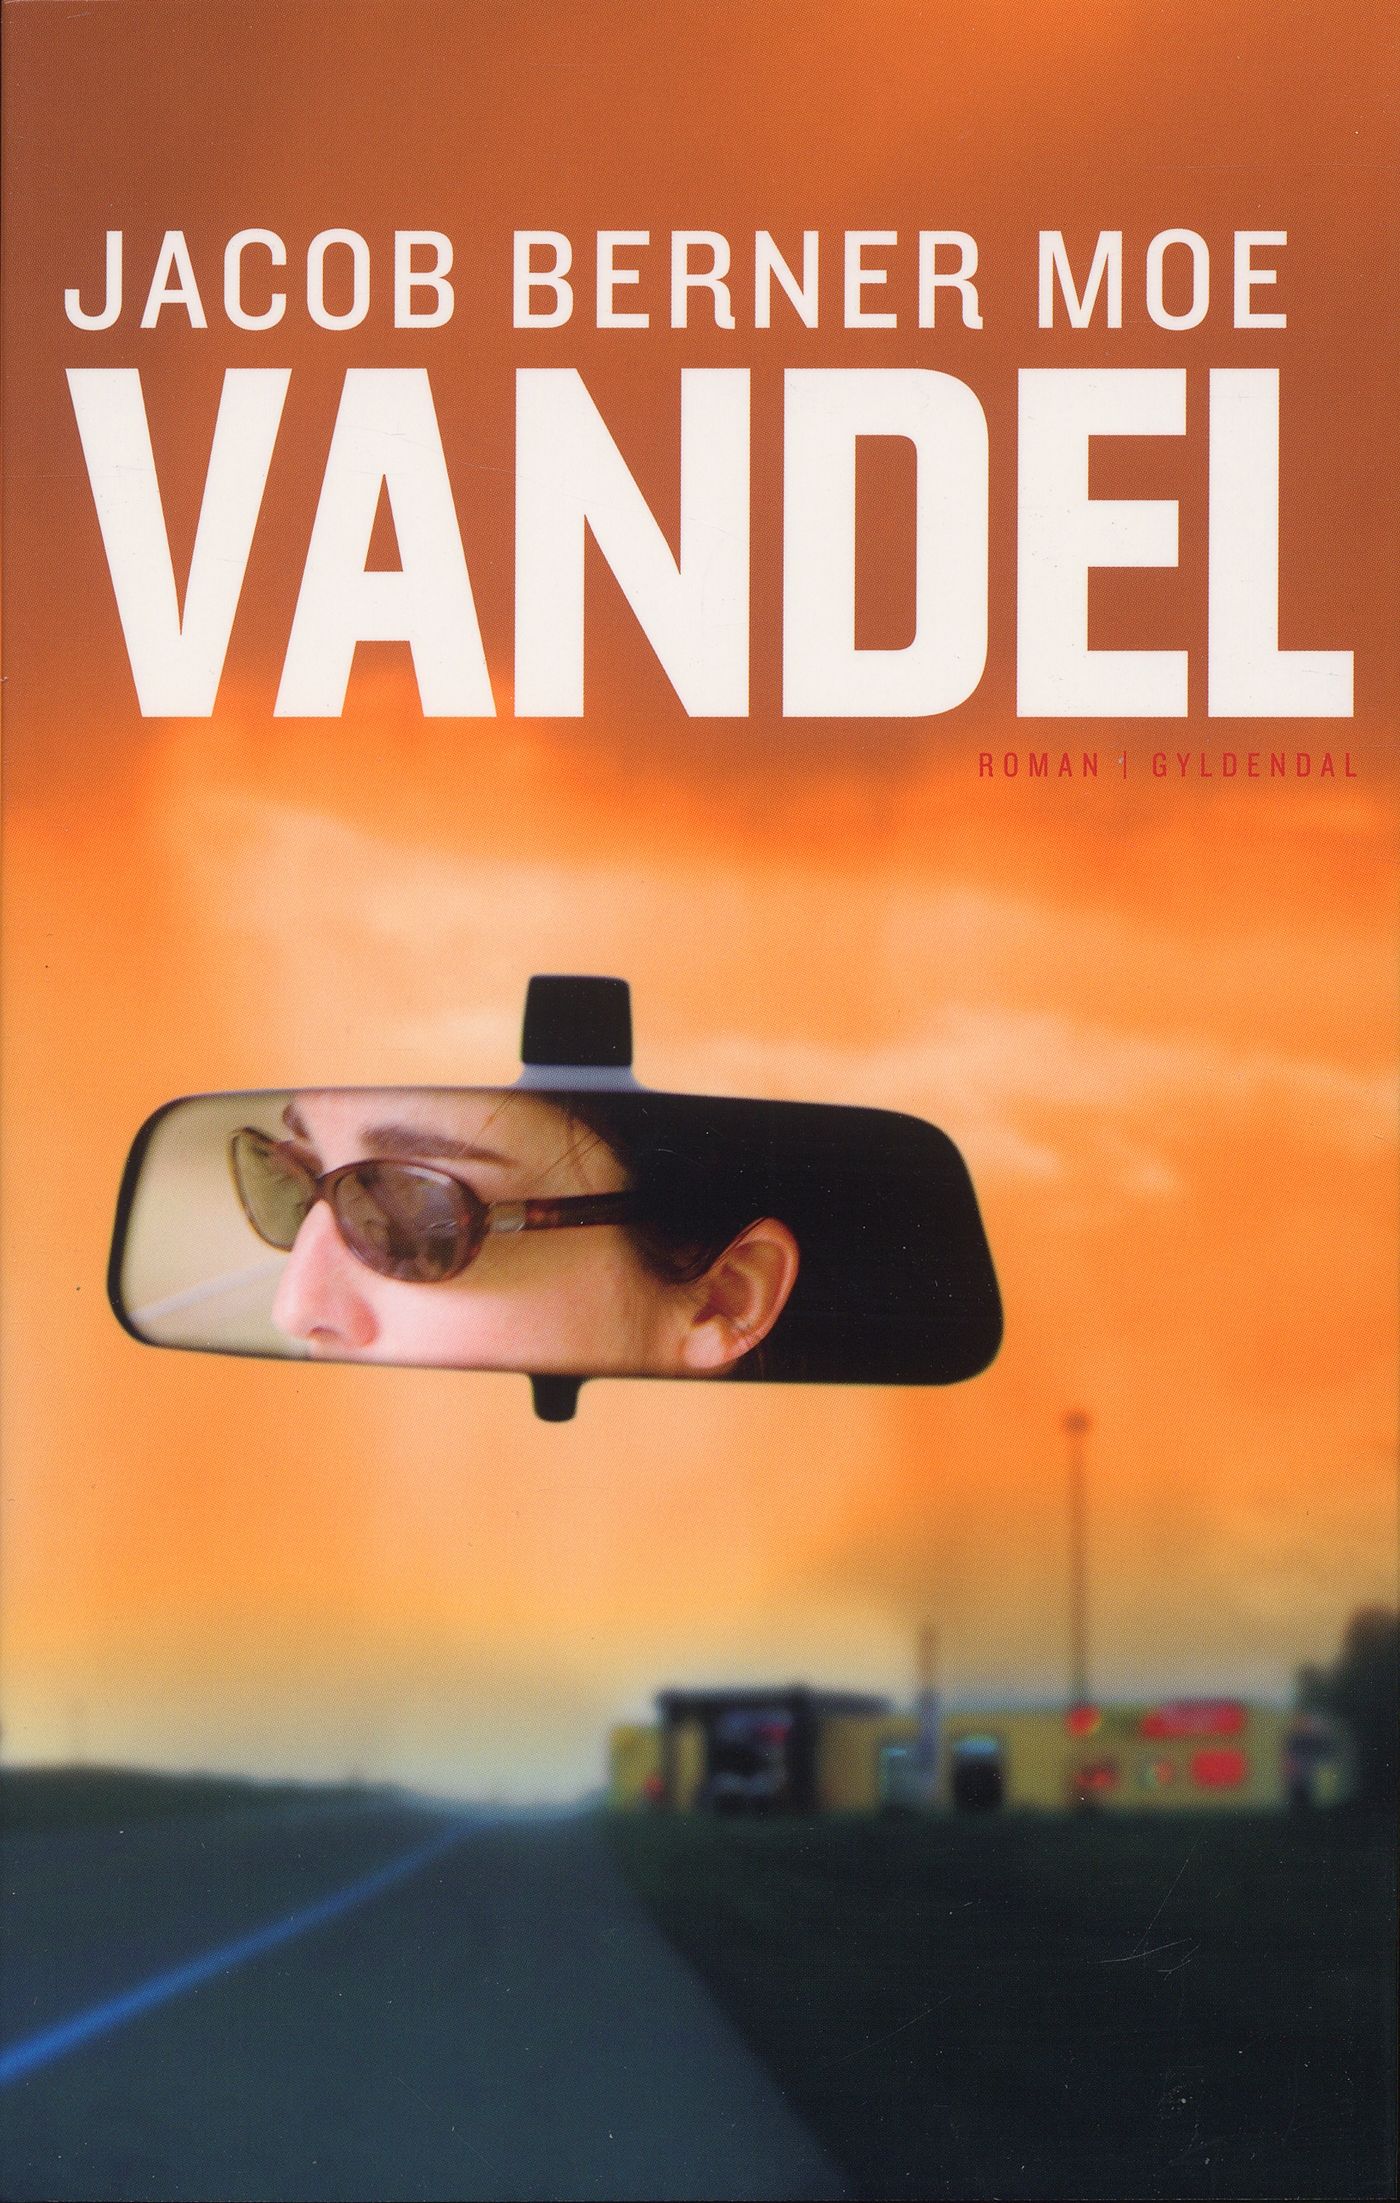 Vandel, eBook by Jacob Berner Moe